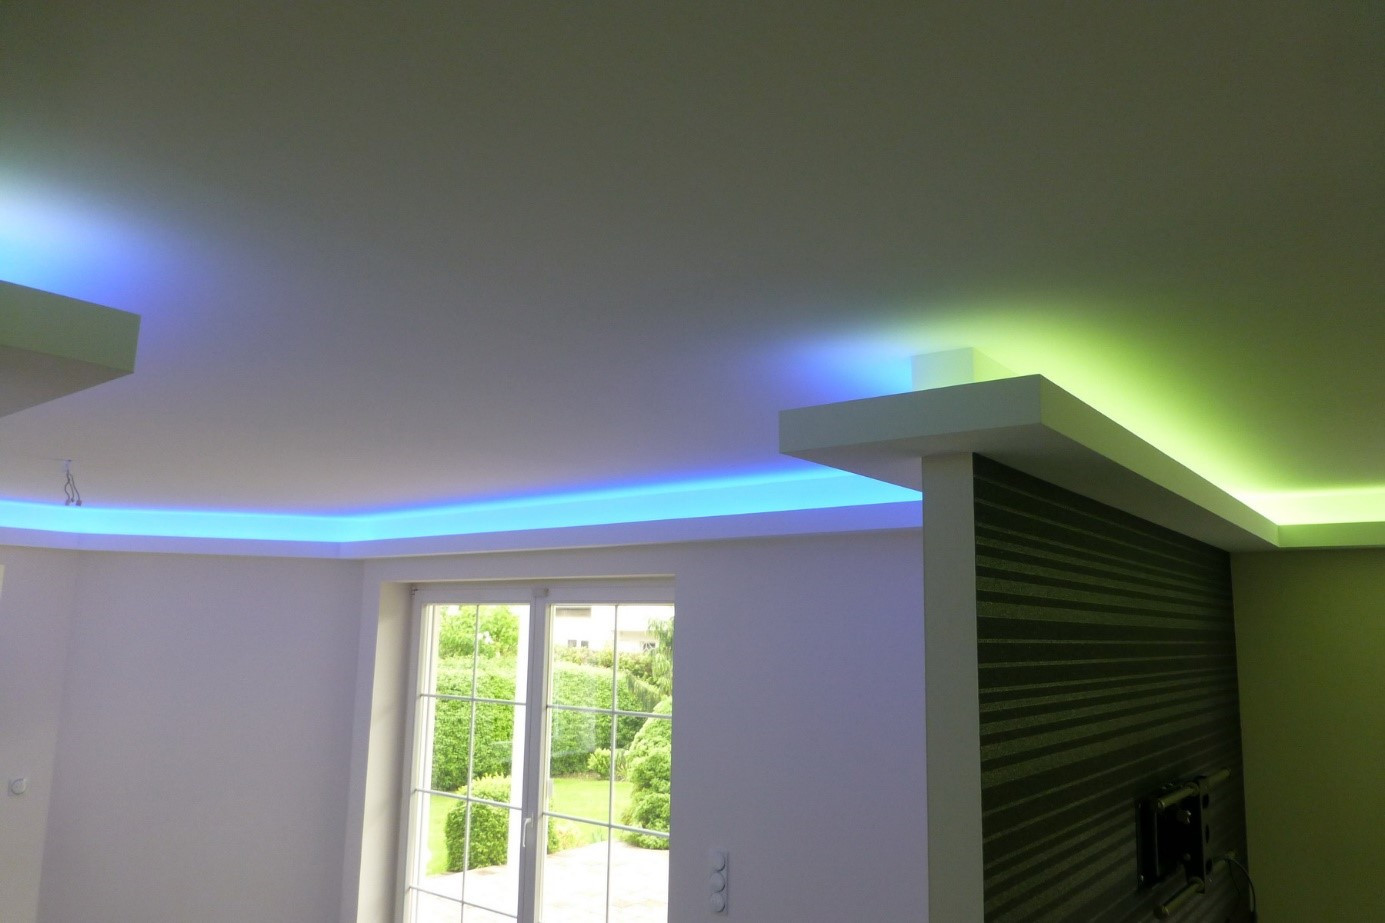 Indirekte Beleuchtung
 Anleitung zum Aufbau einer indirekten Beleuchtung mit LEDs